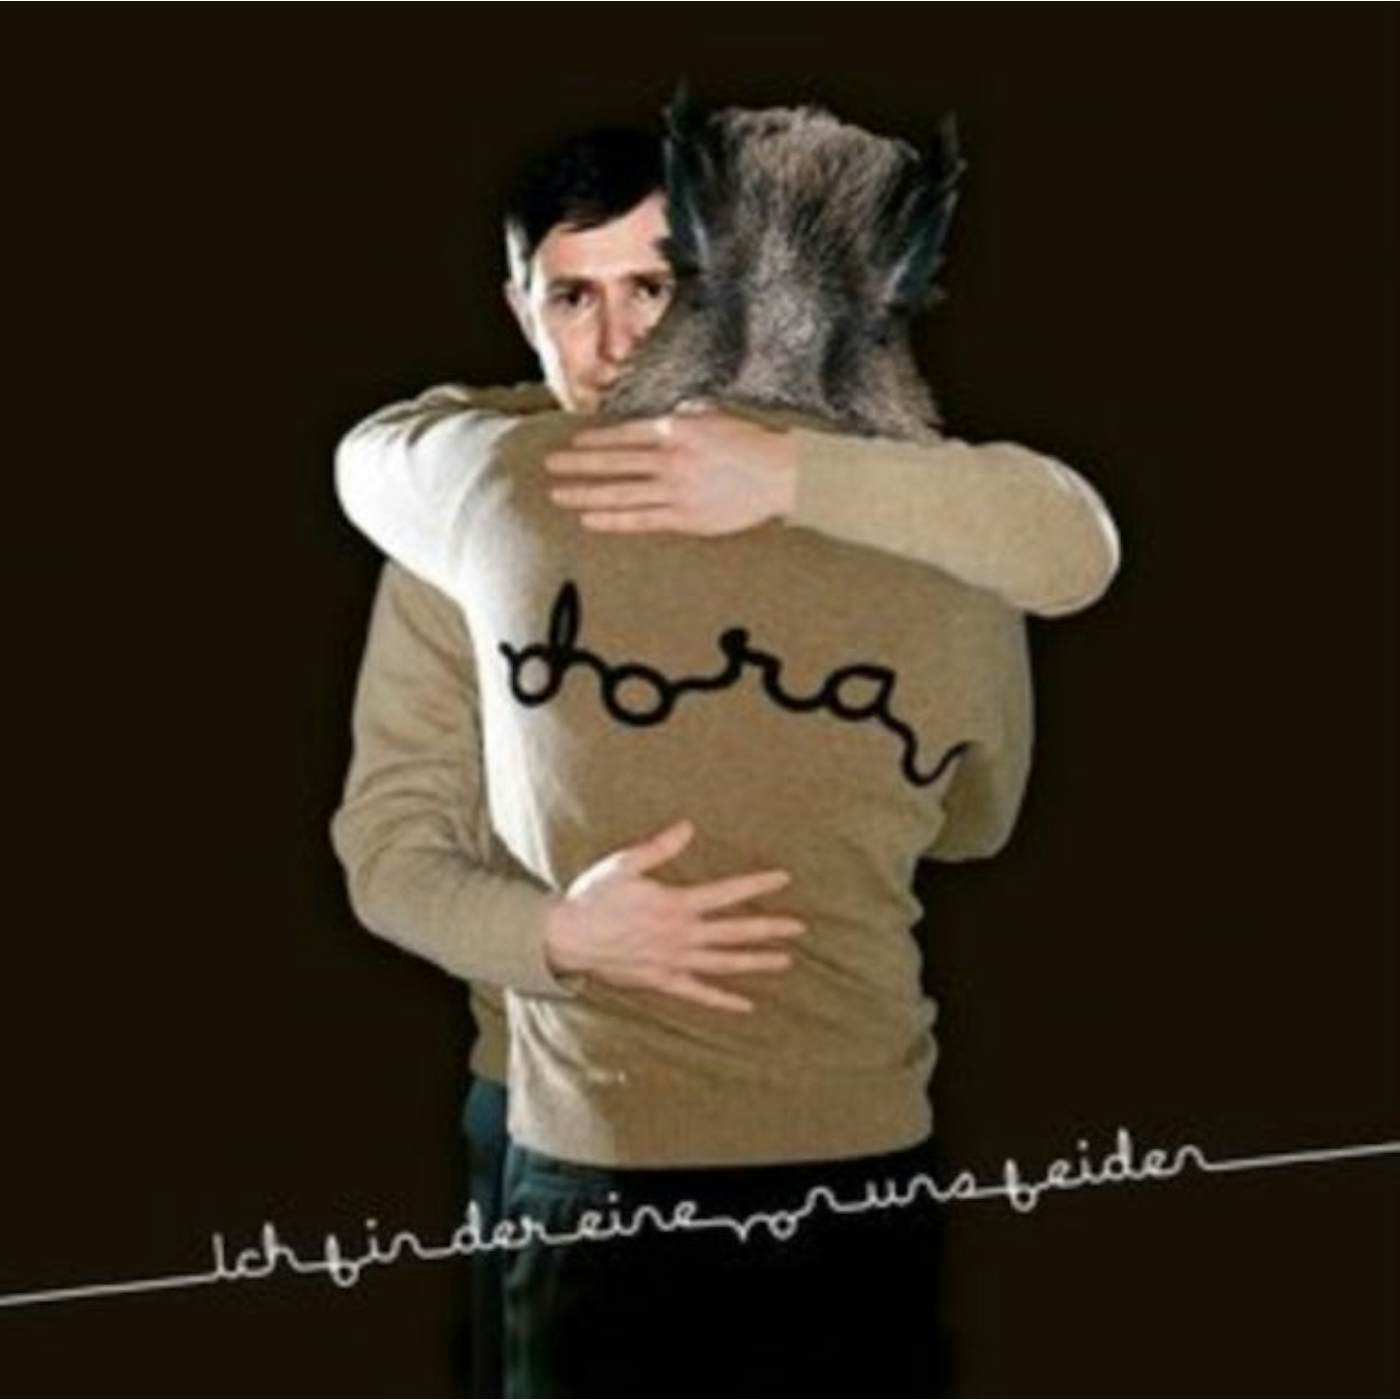 Andreas Dorau LP - Ich Bin Der Eine Von Uns Beide (Vinyl)